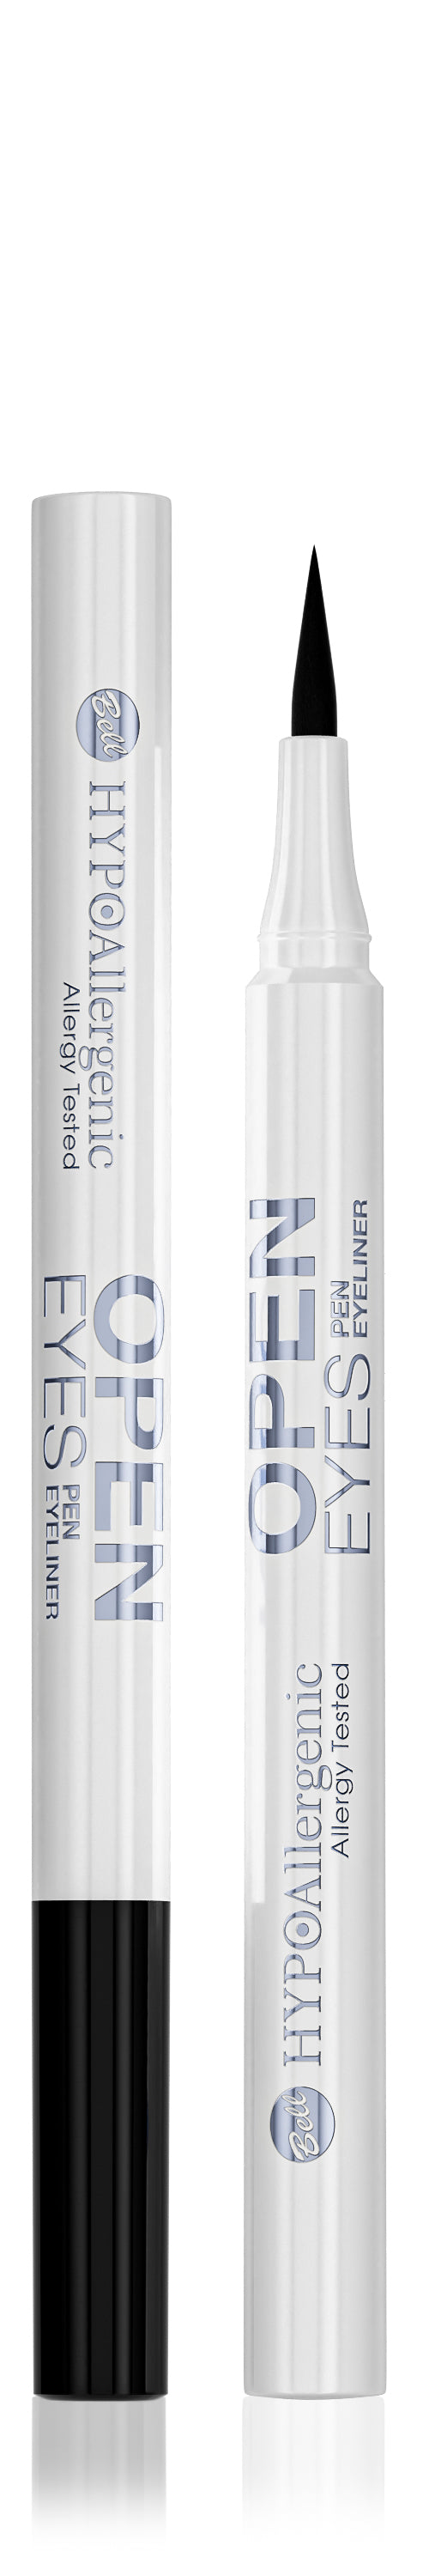 Bell Hypoallergenic Open Eyes Eyeliner Pen - 01 Noir Black Vegan Allergy Tested